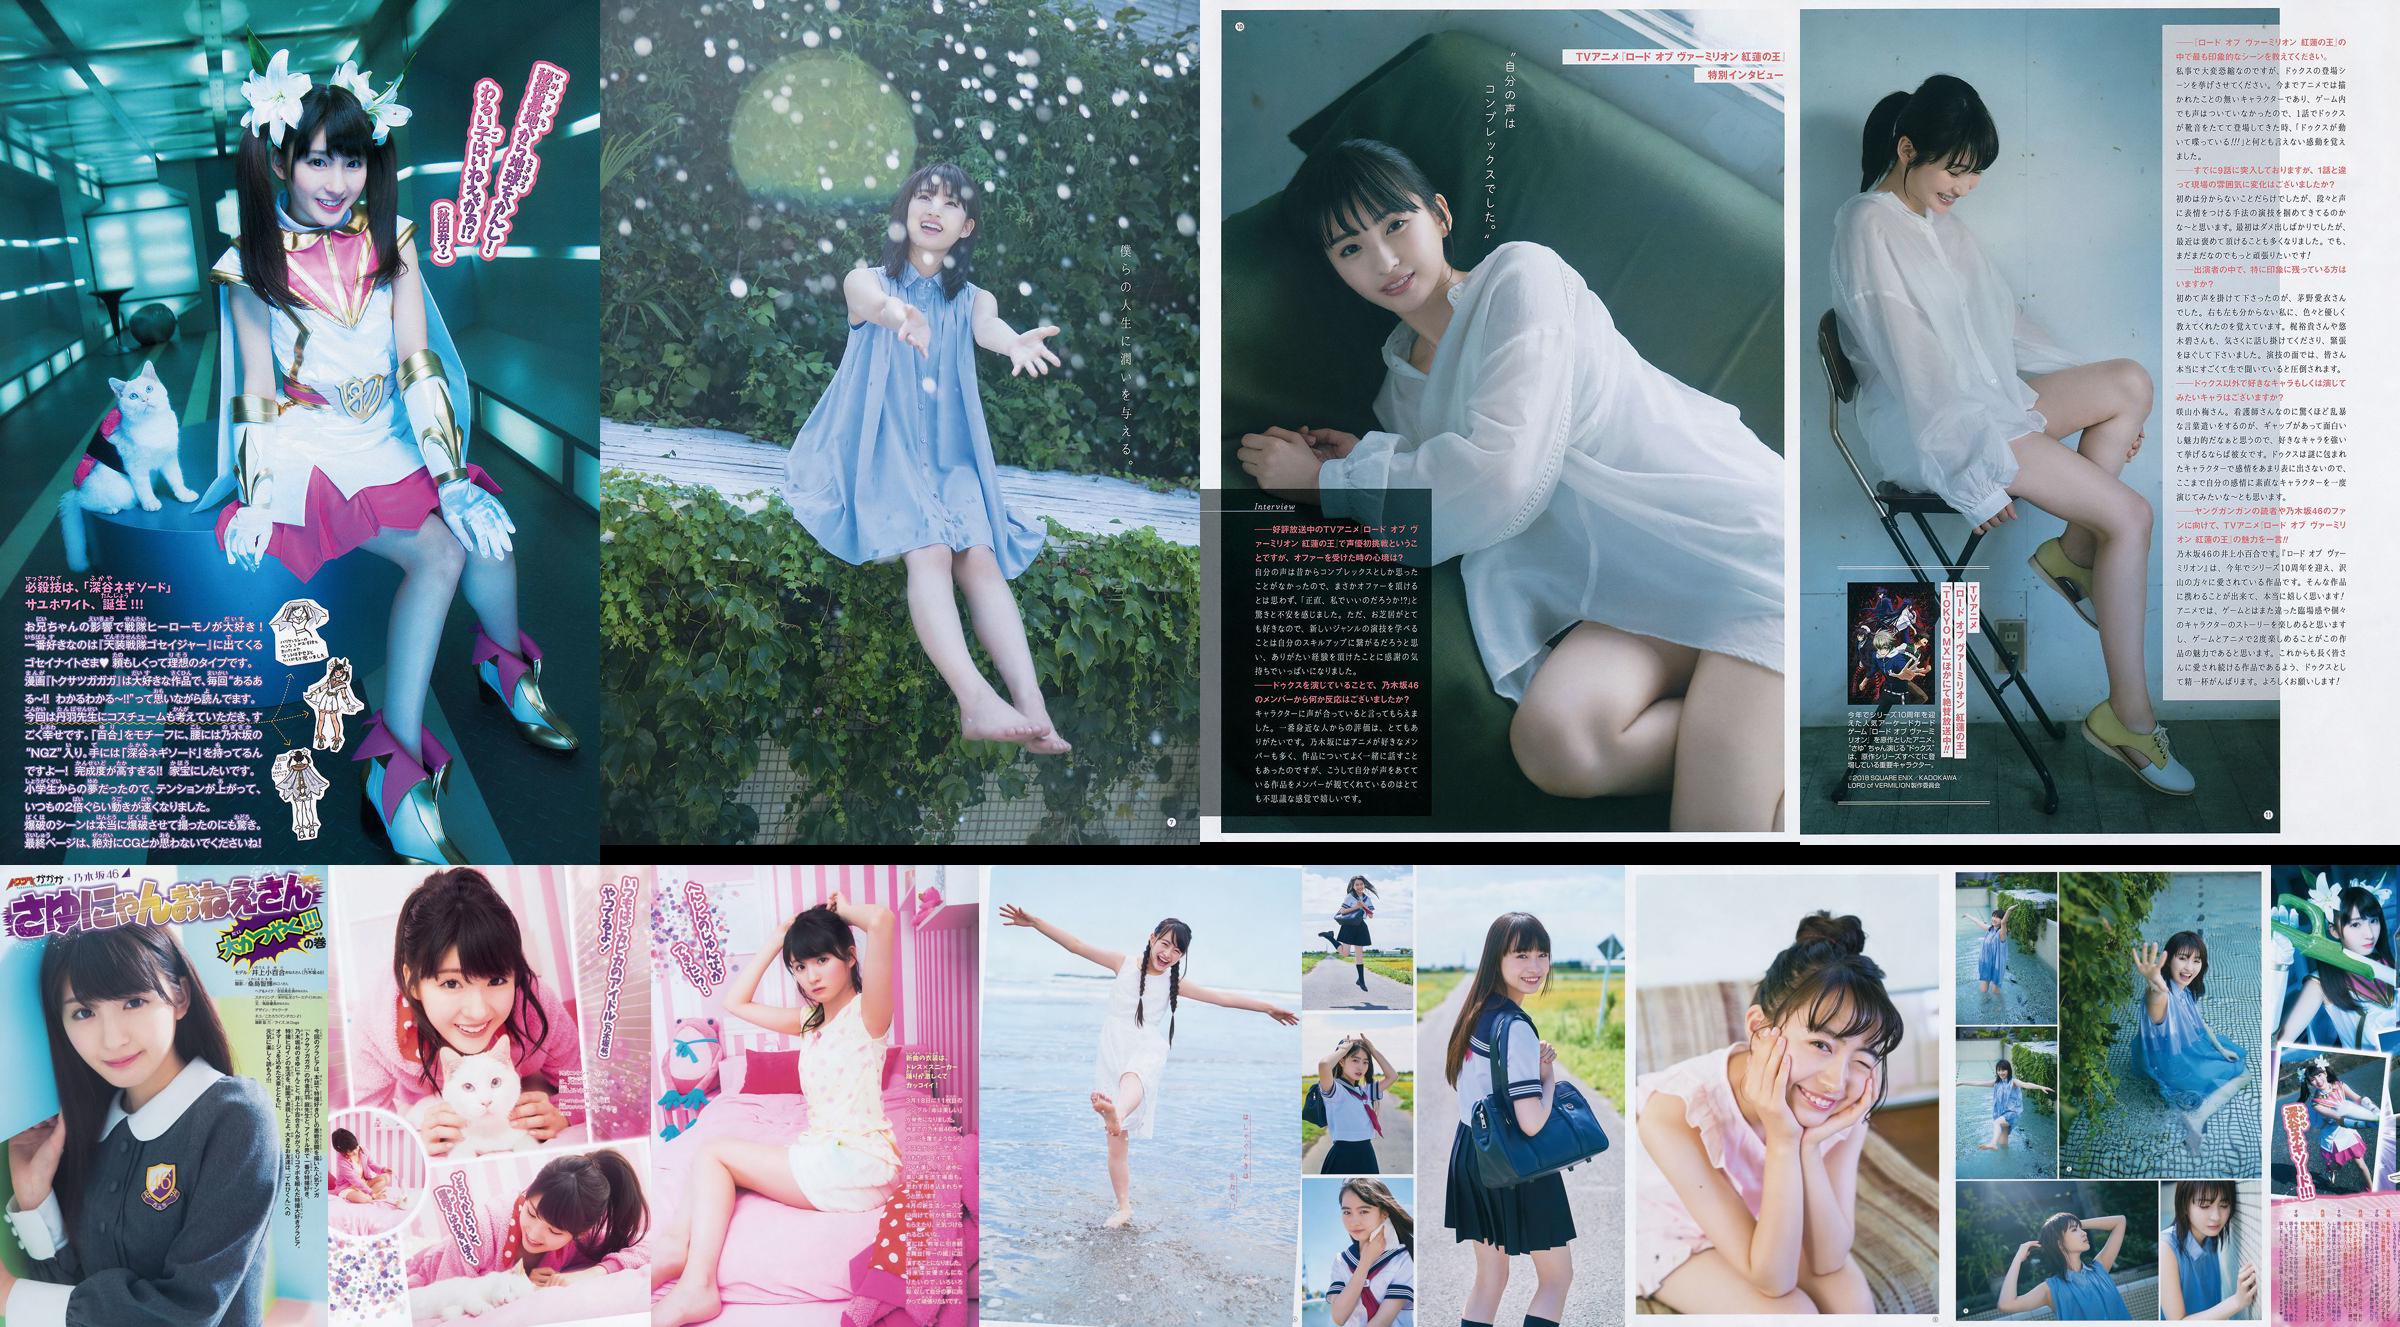 [Young Gangan] Sayuri Inoue Its original sand 2018 No.18 Photo Magazine No.2305ca Page 1